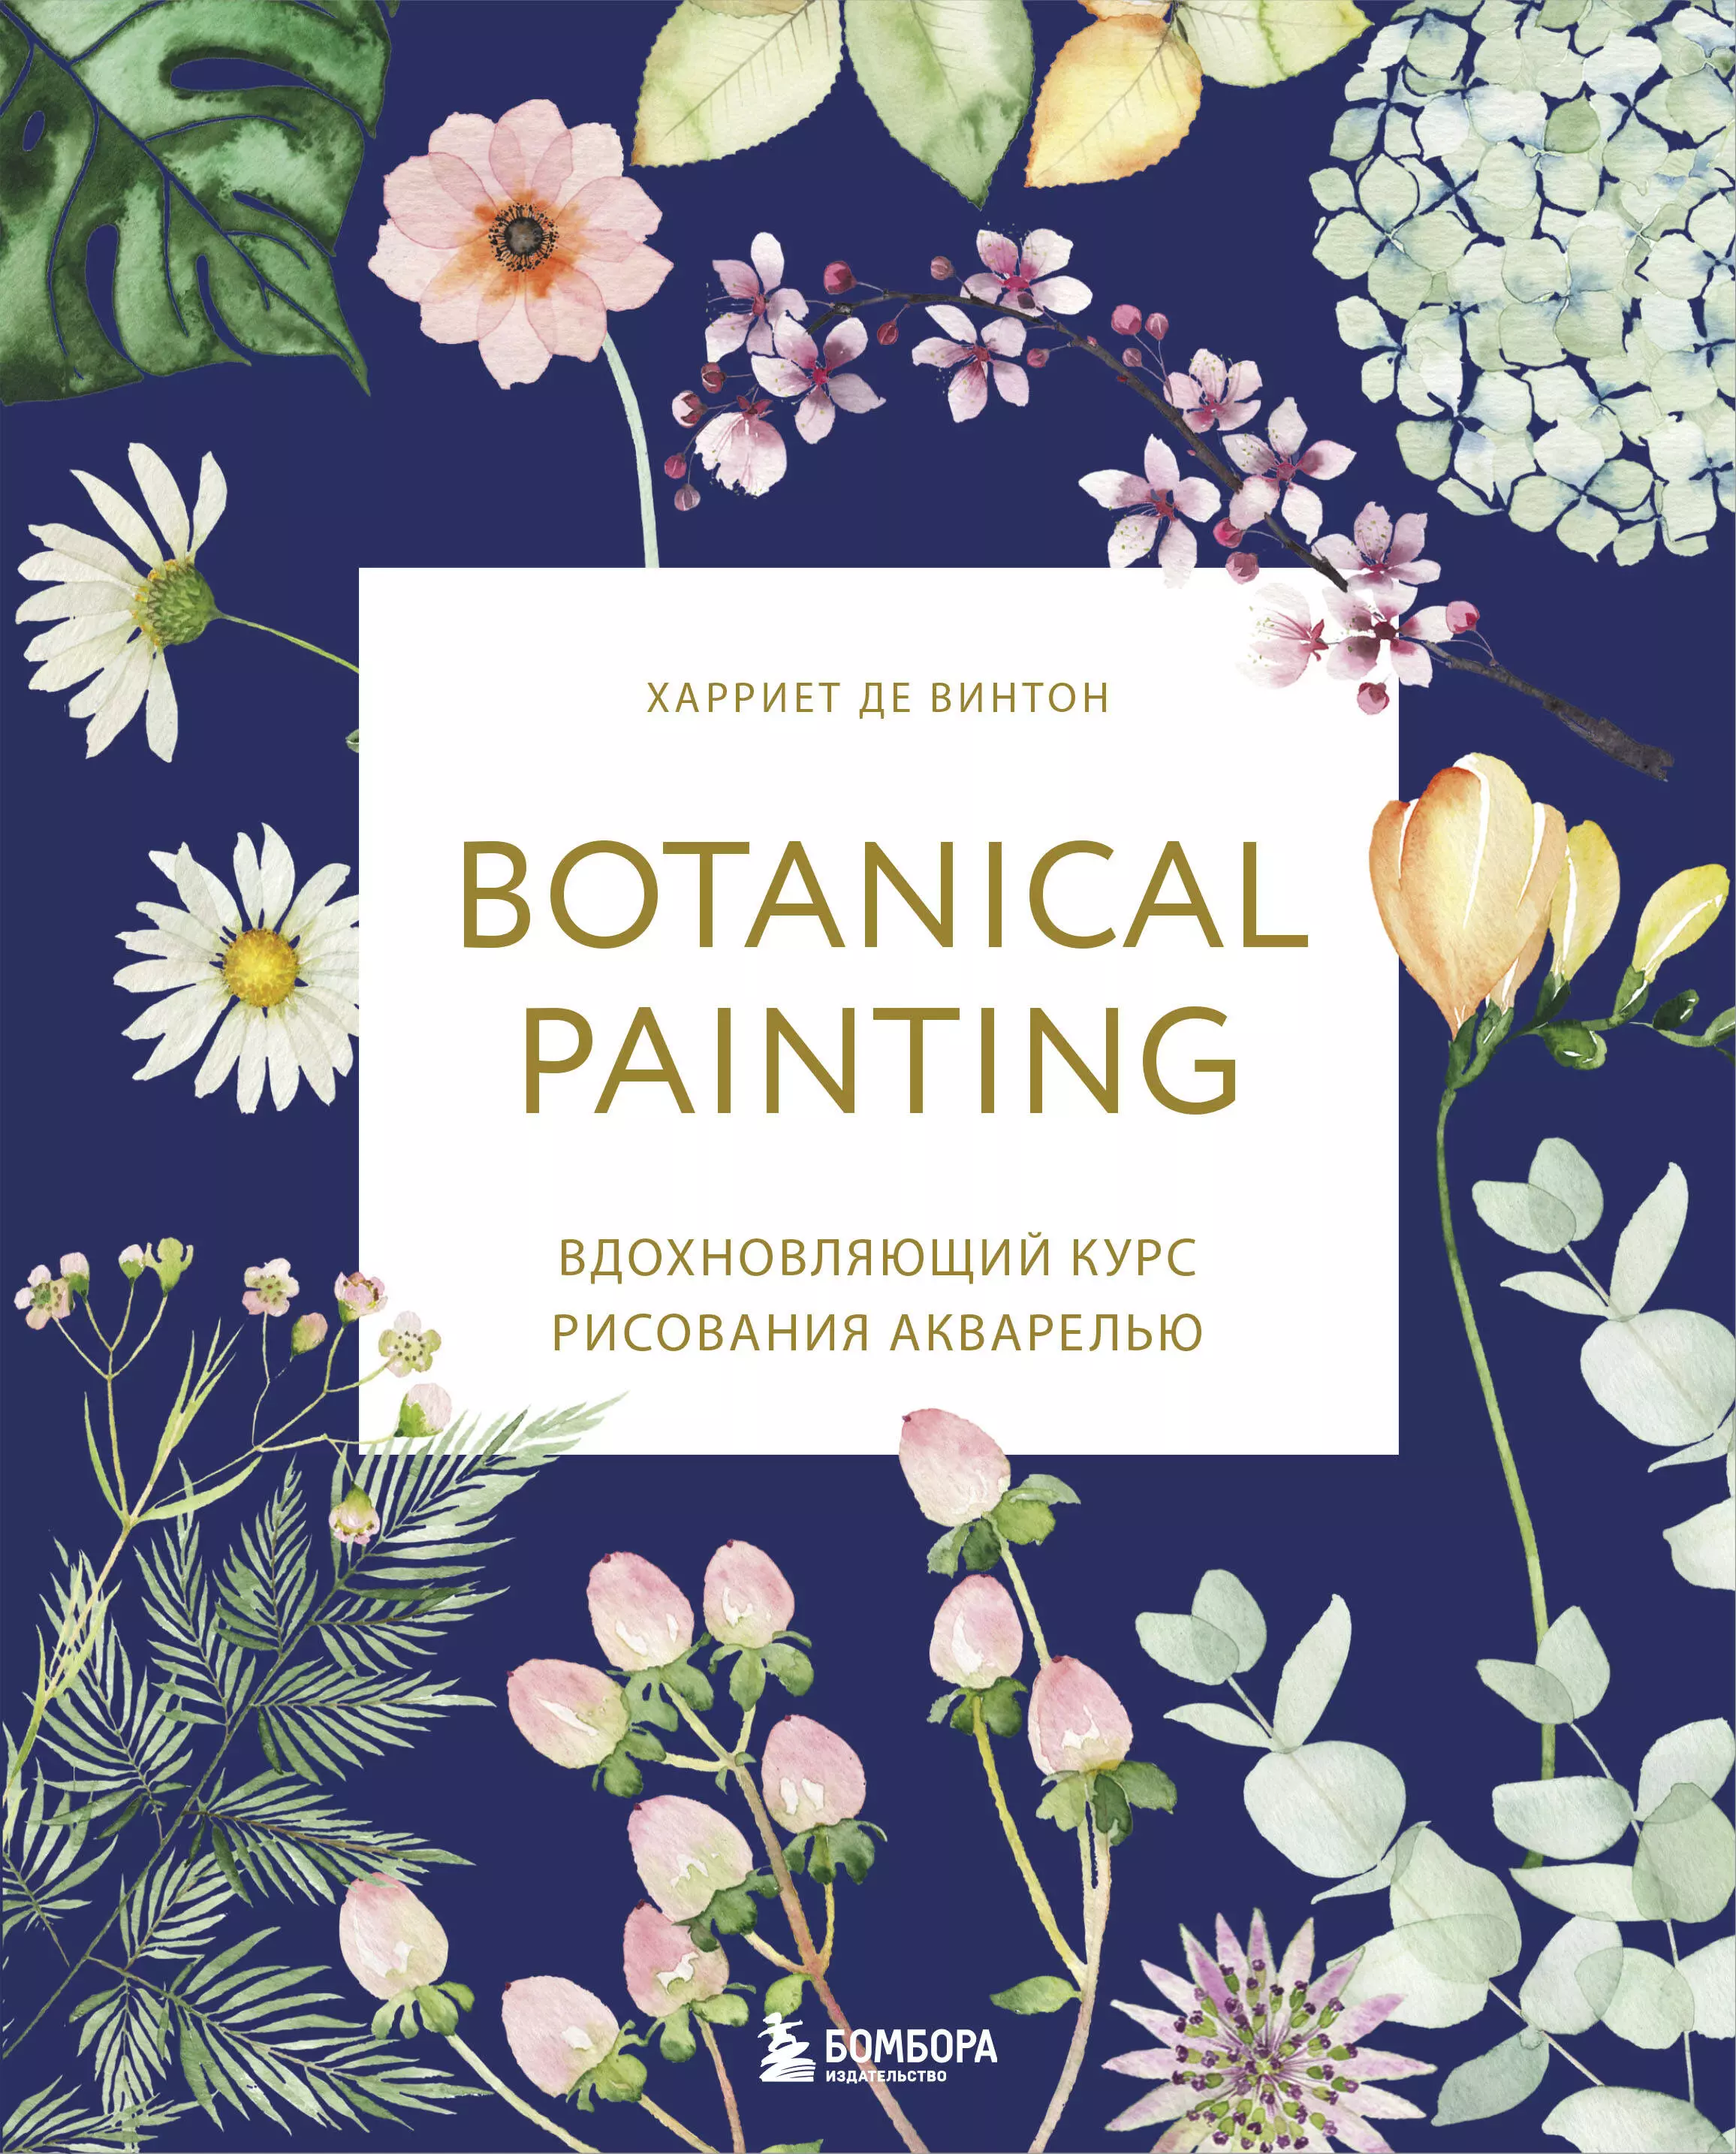 botanical painting вдохновляющий курс рисования акварелью де винтон х Botanical painting. Вдохновляющий курс рисования акварелью